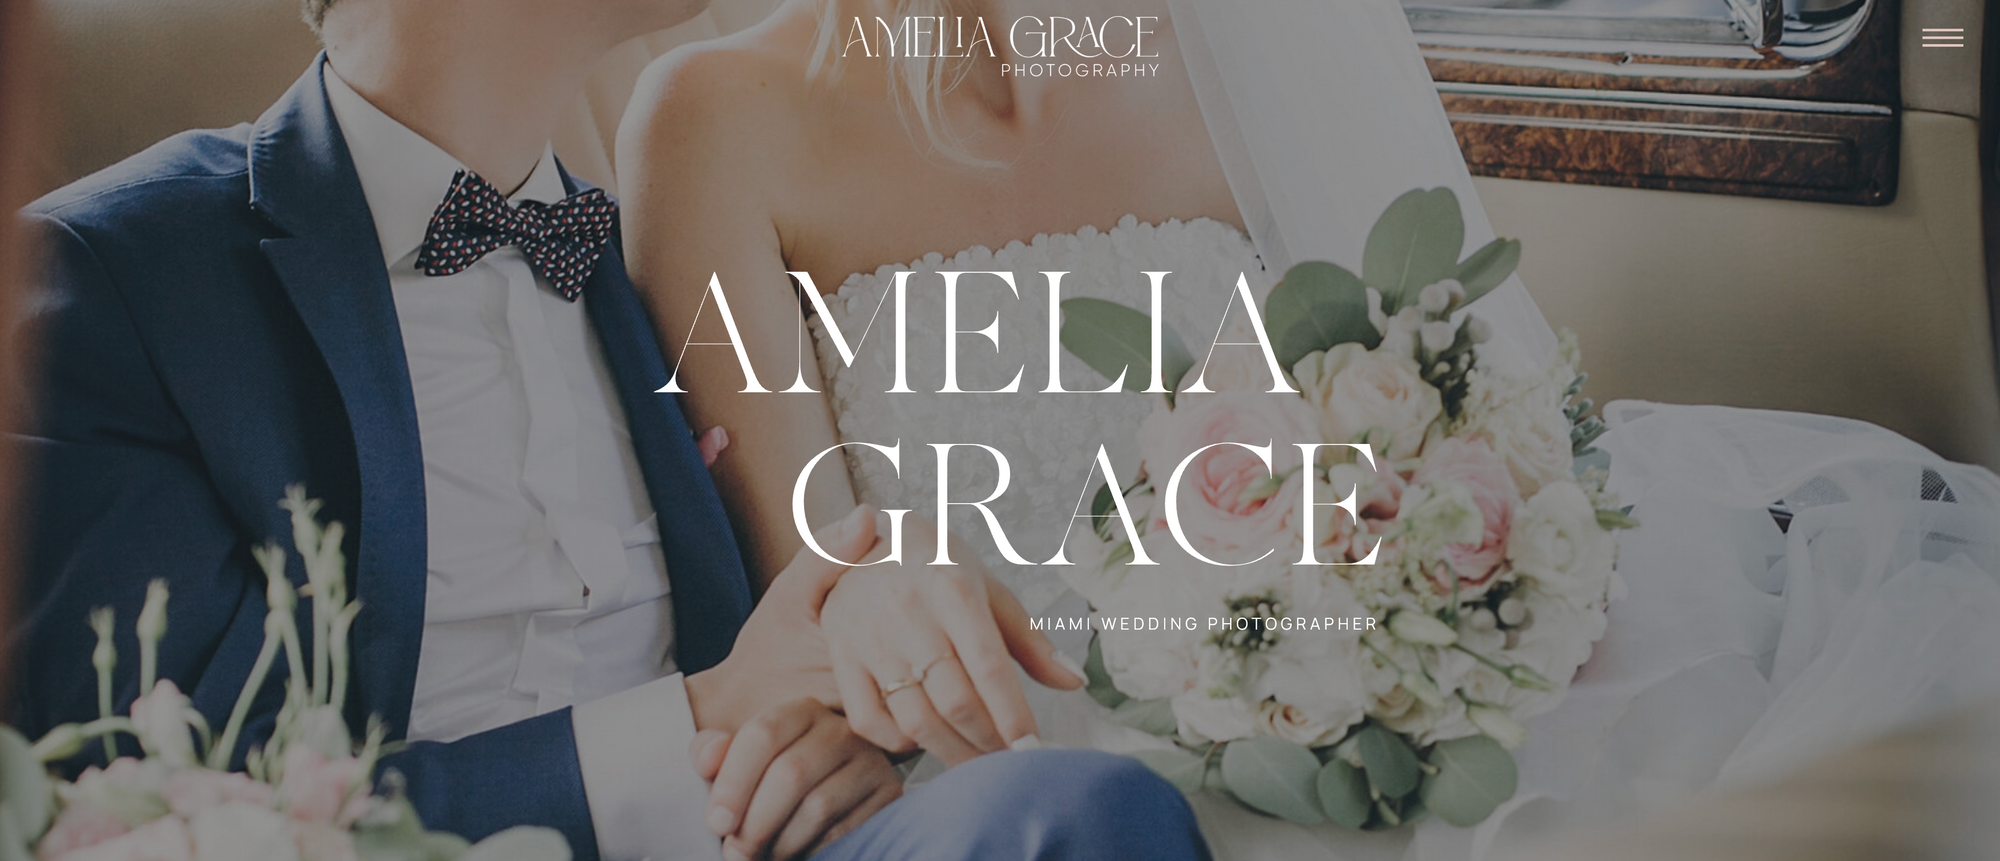 Amelia Grace